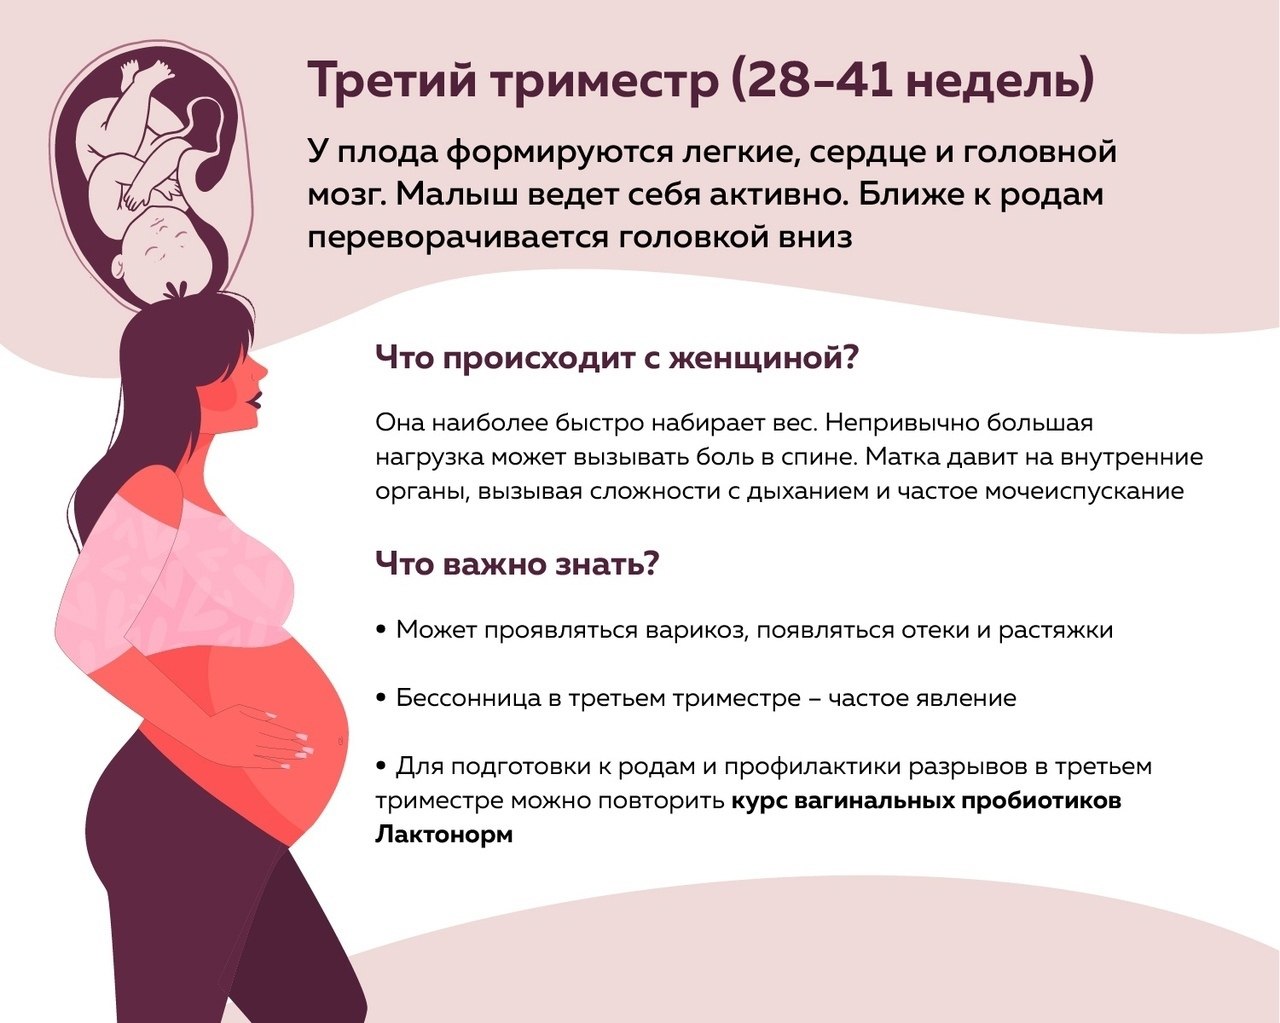 Первый триместр года. Внимание беременность. Беременность – ответственный период в жизни женщины.